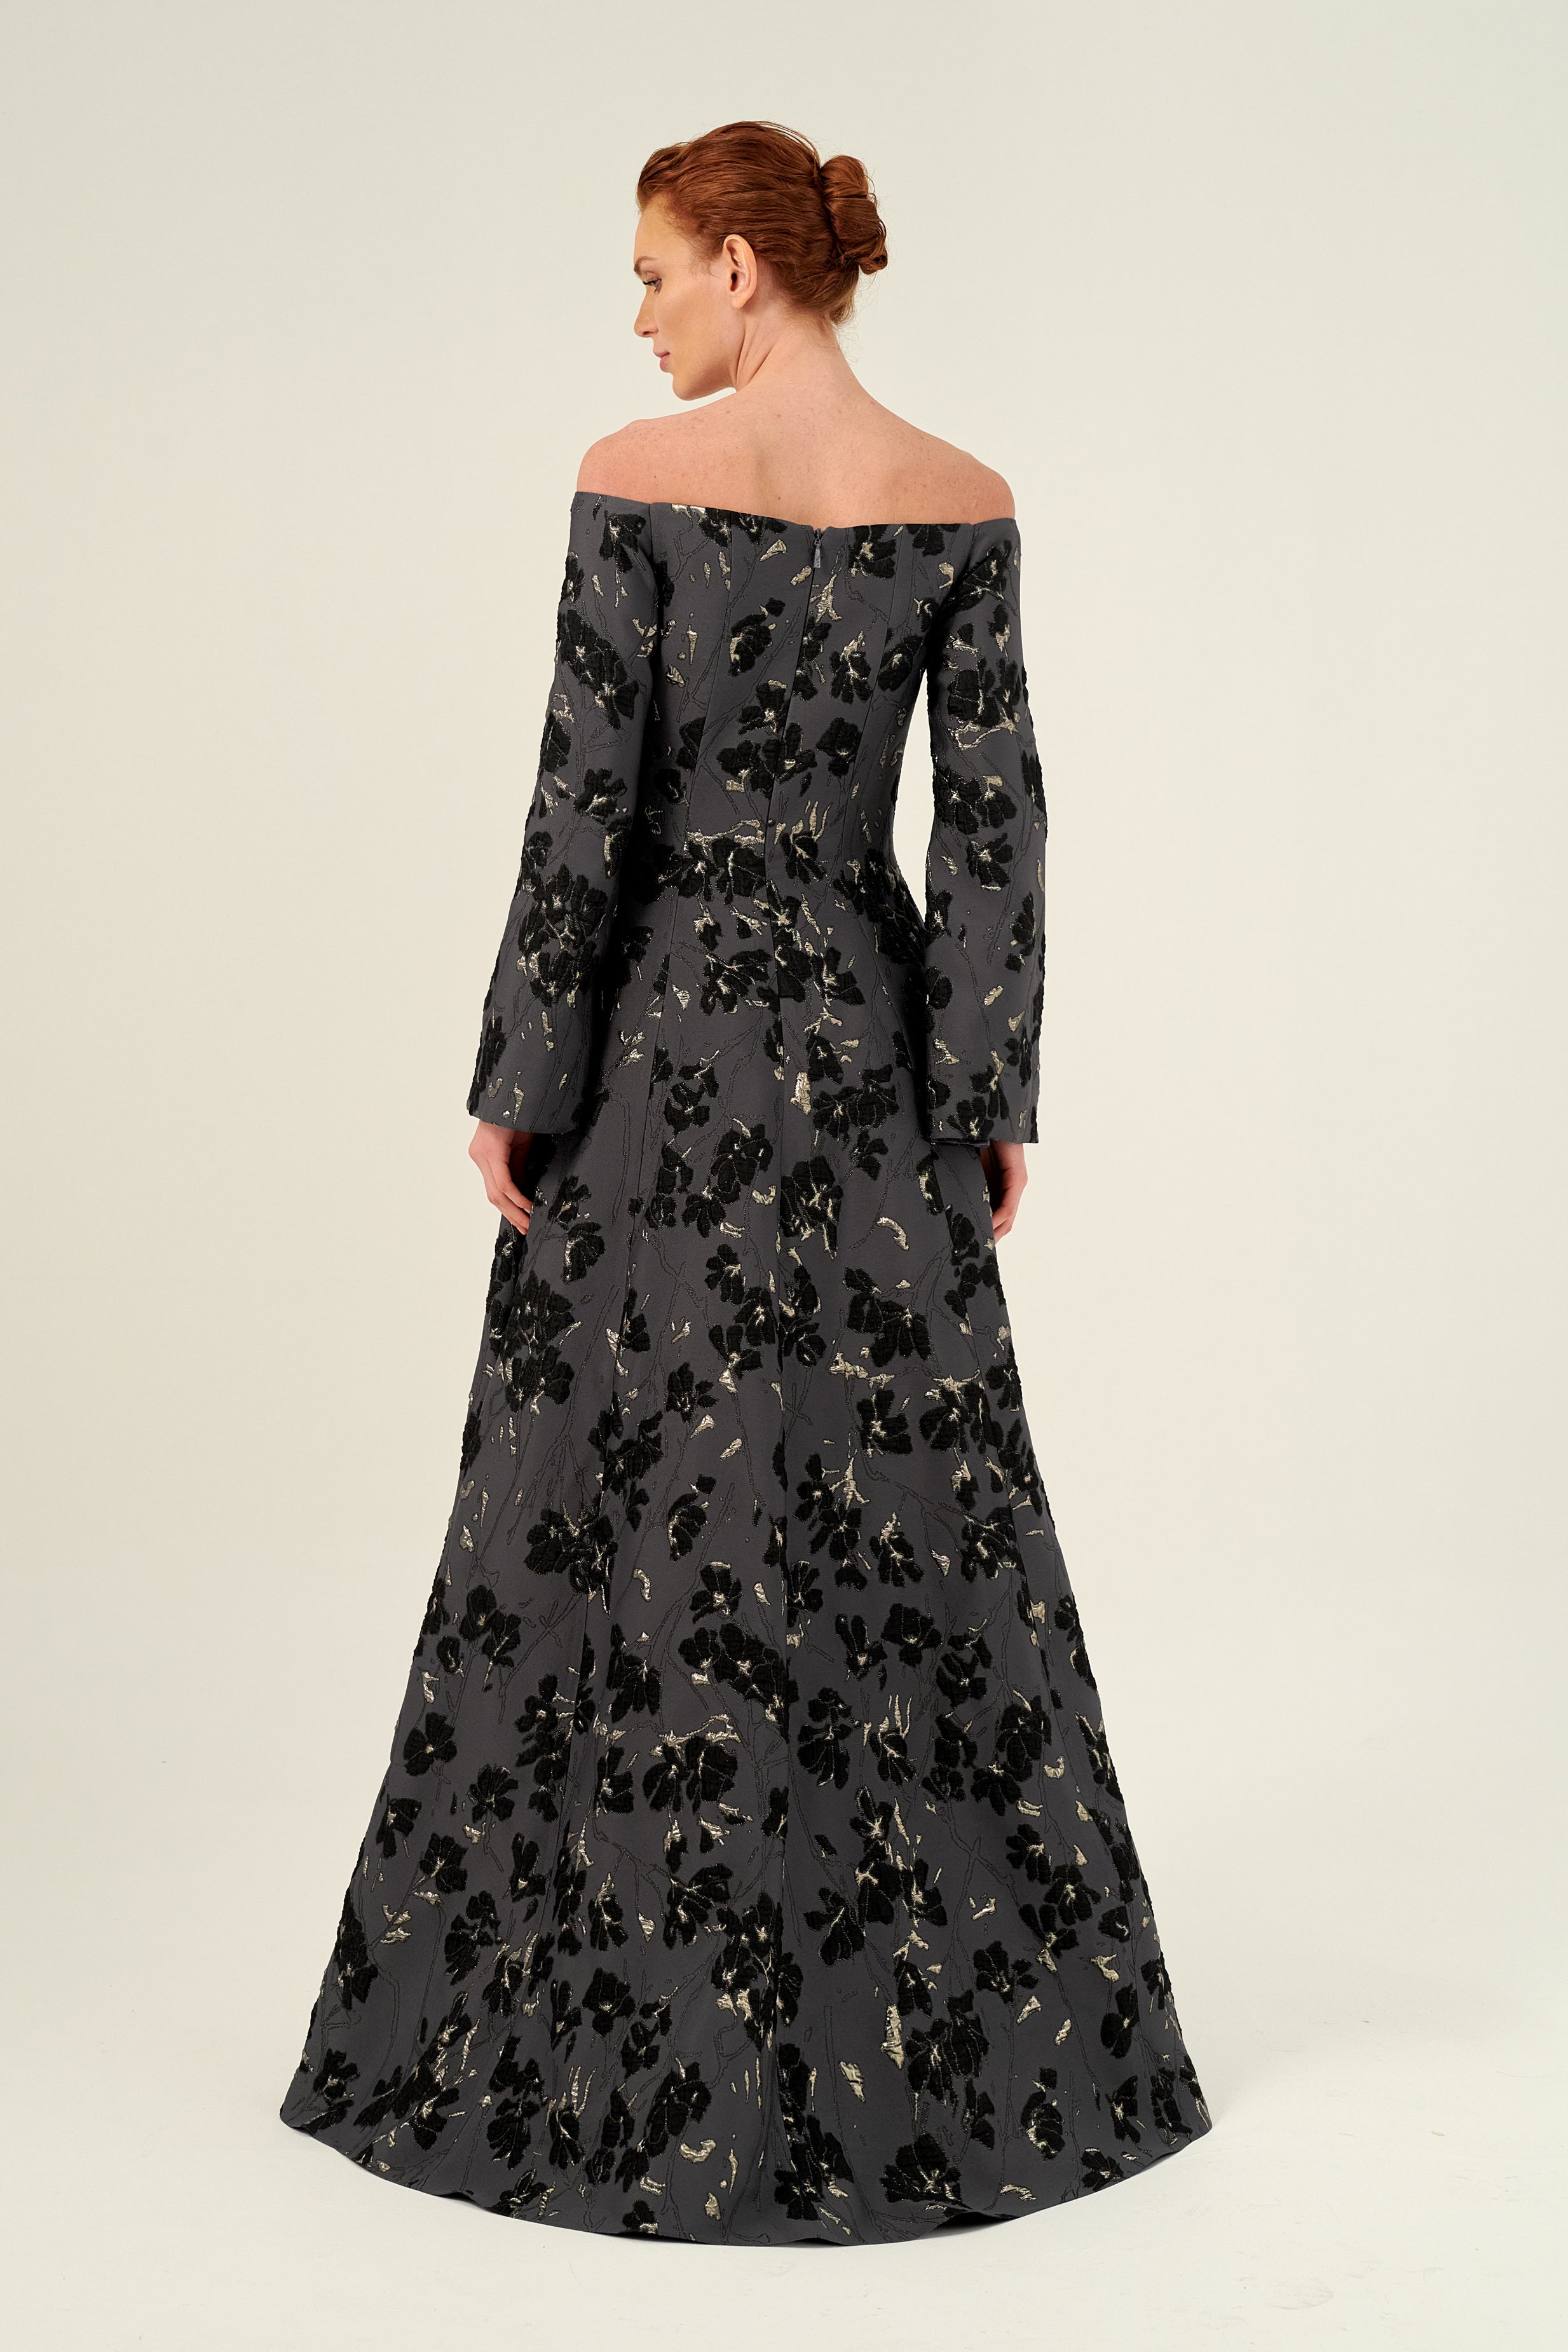 Black Gothic Wedding Dress Long Sleeves Applique Tiered Skirt Off Shoulder  V-neck Alternative Bridal Gown – Yelure UK